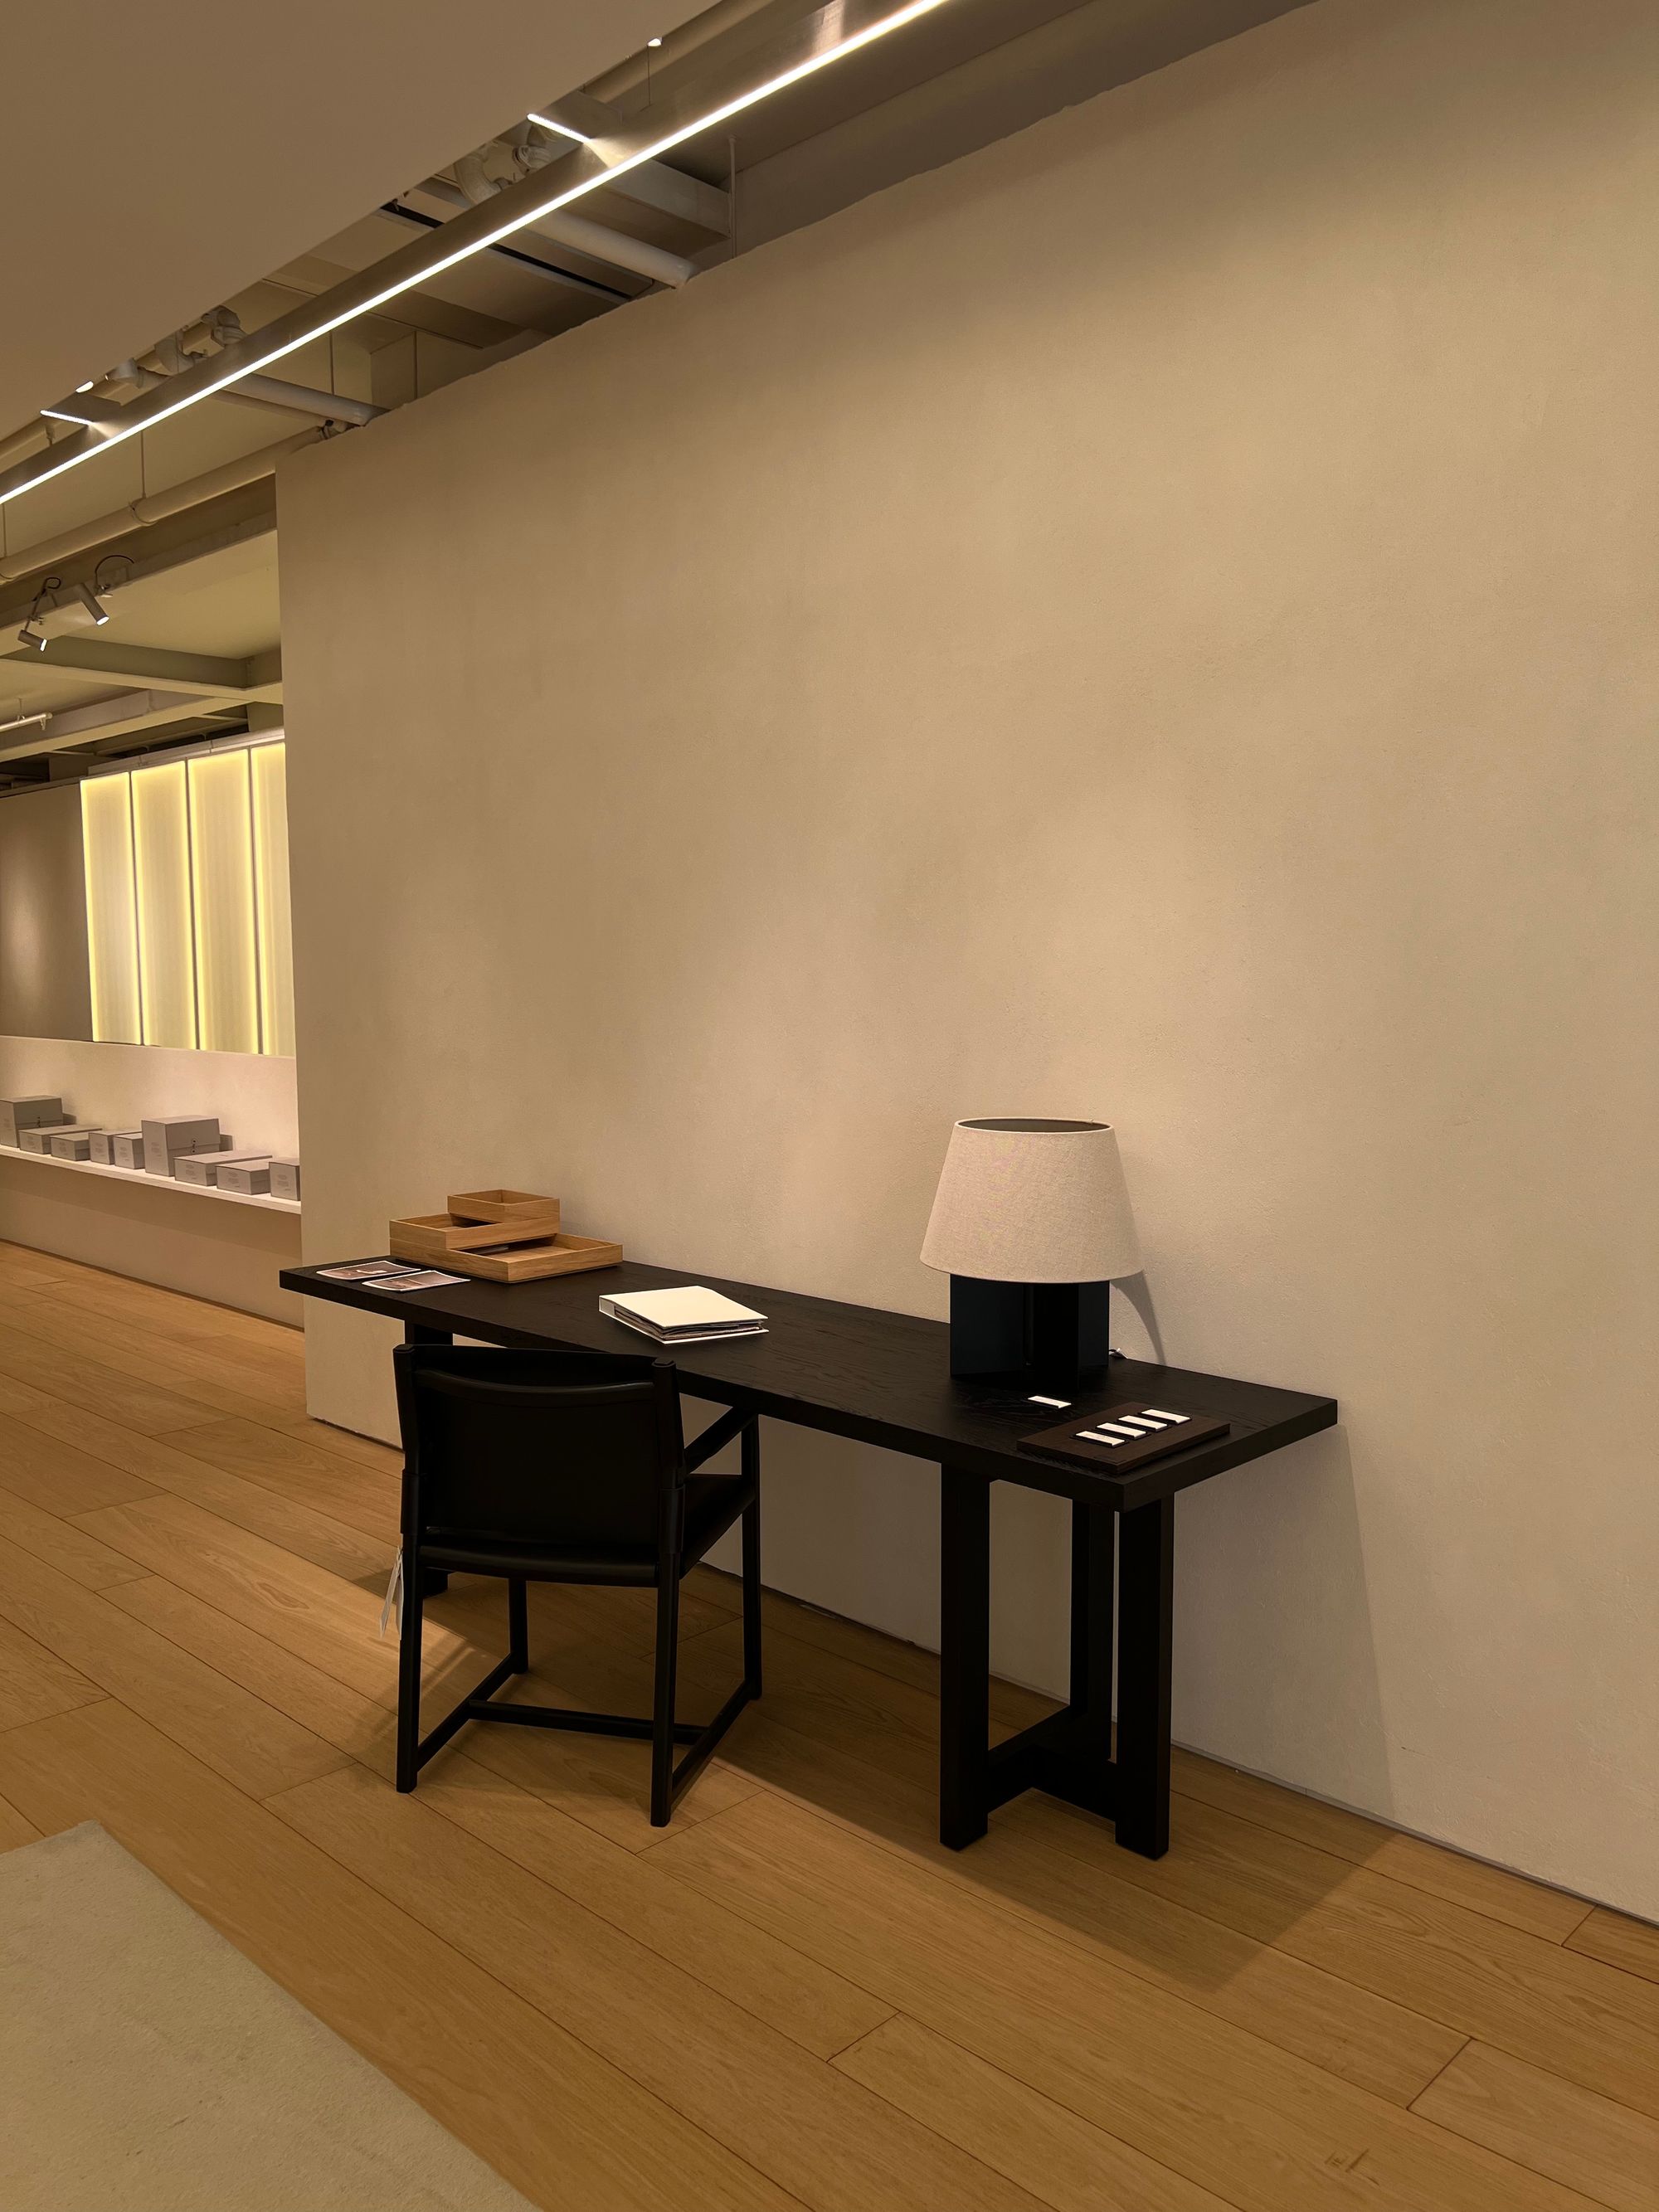 Zara Home x Vincent Van Duysen: una colección de diseño